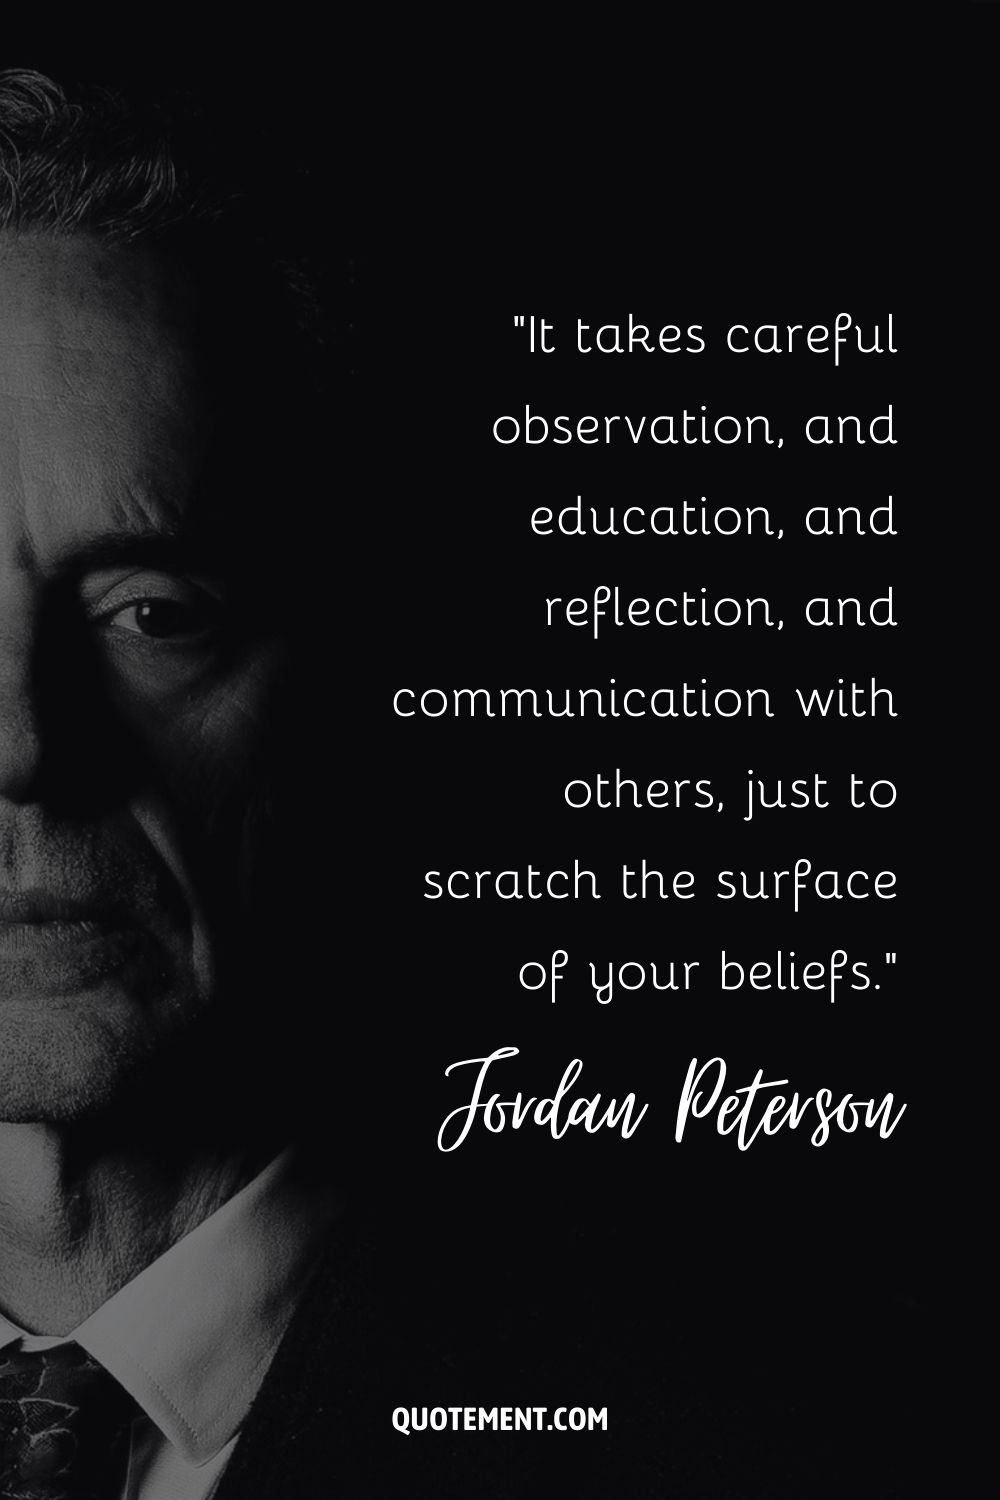 Se necesita una observación cuidadosa, educación, reflexión y comunicación con los demás, sólo para arañar la superficie de tus creencias.